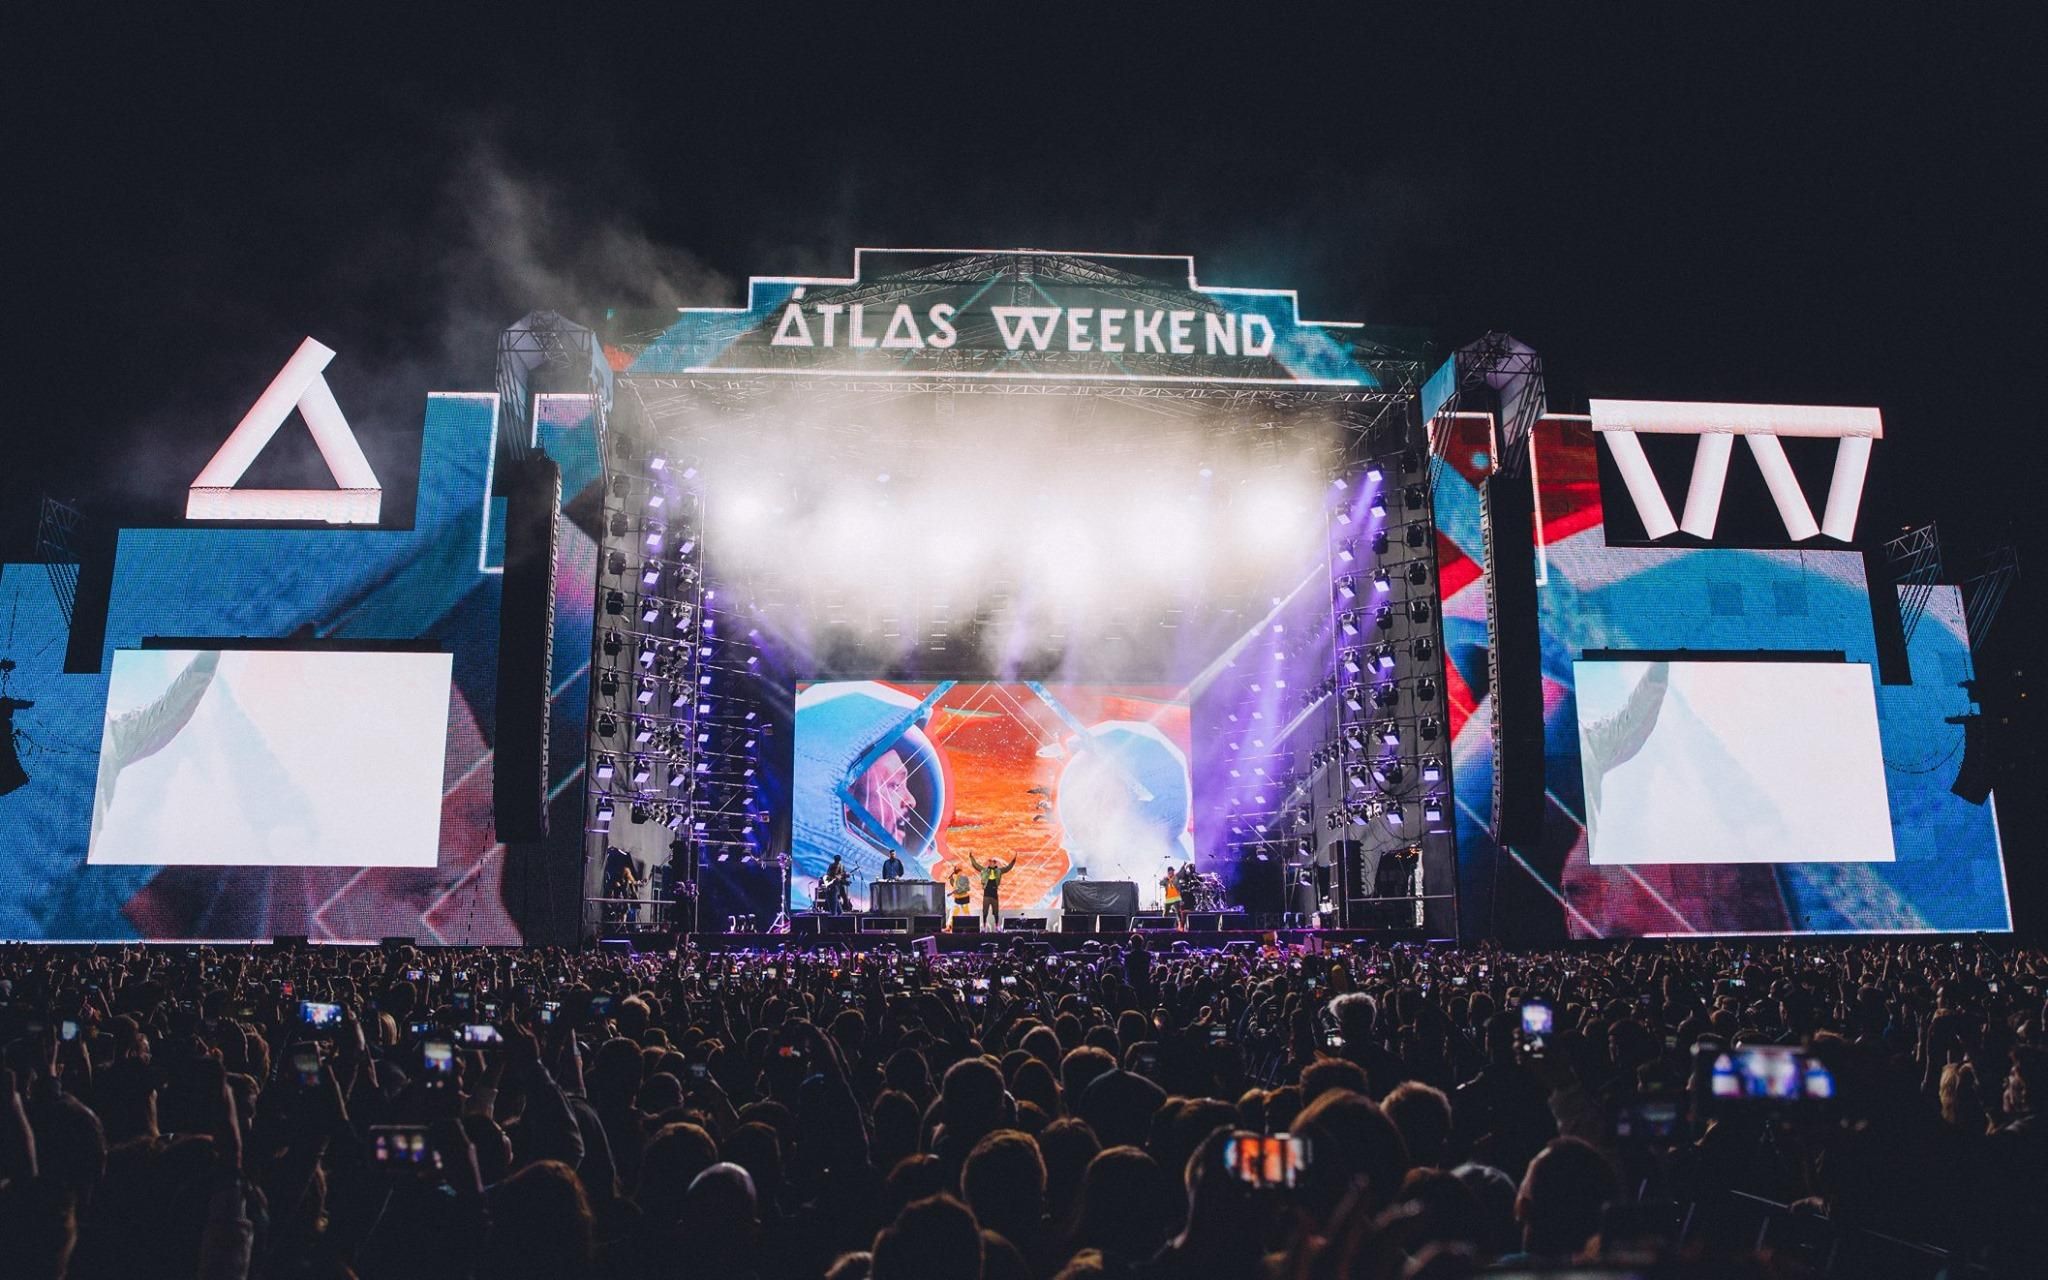 Второй день Atlas Weekend: как прошли выступления группы Black Eyed Peas и певицы Netta